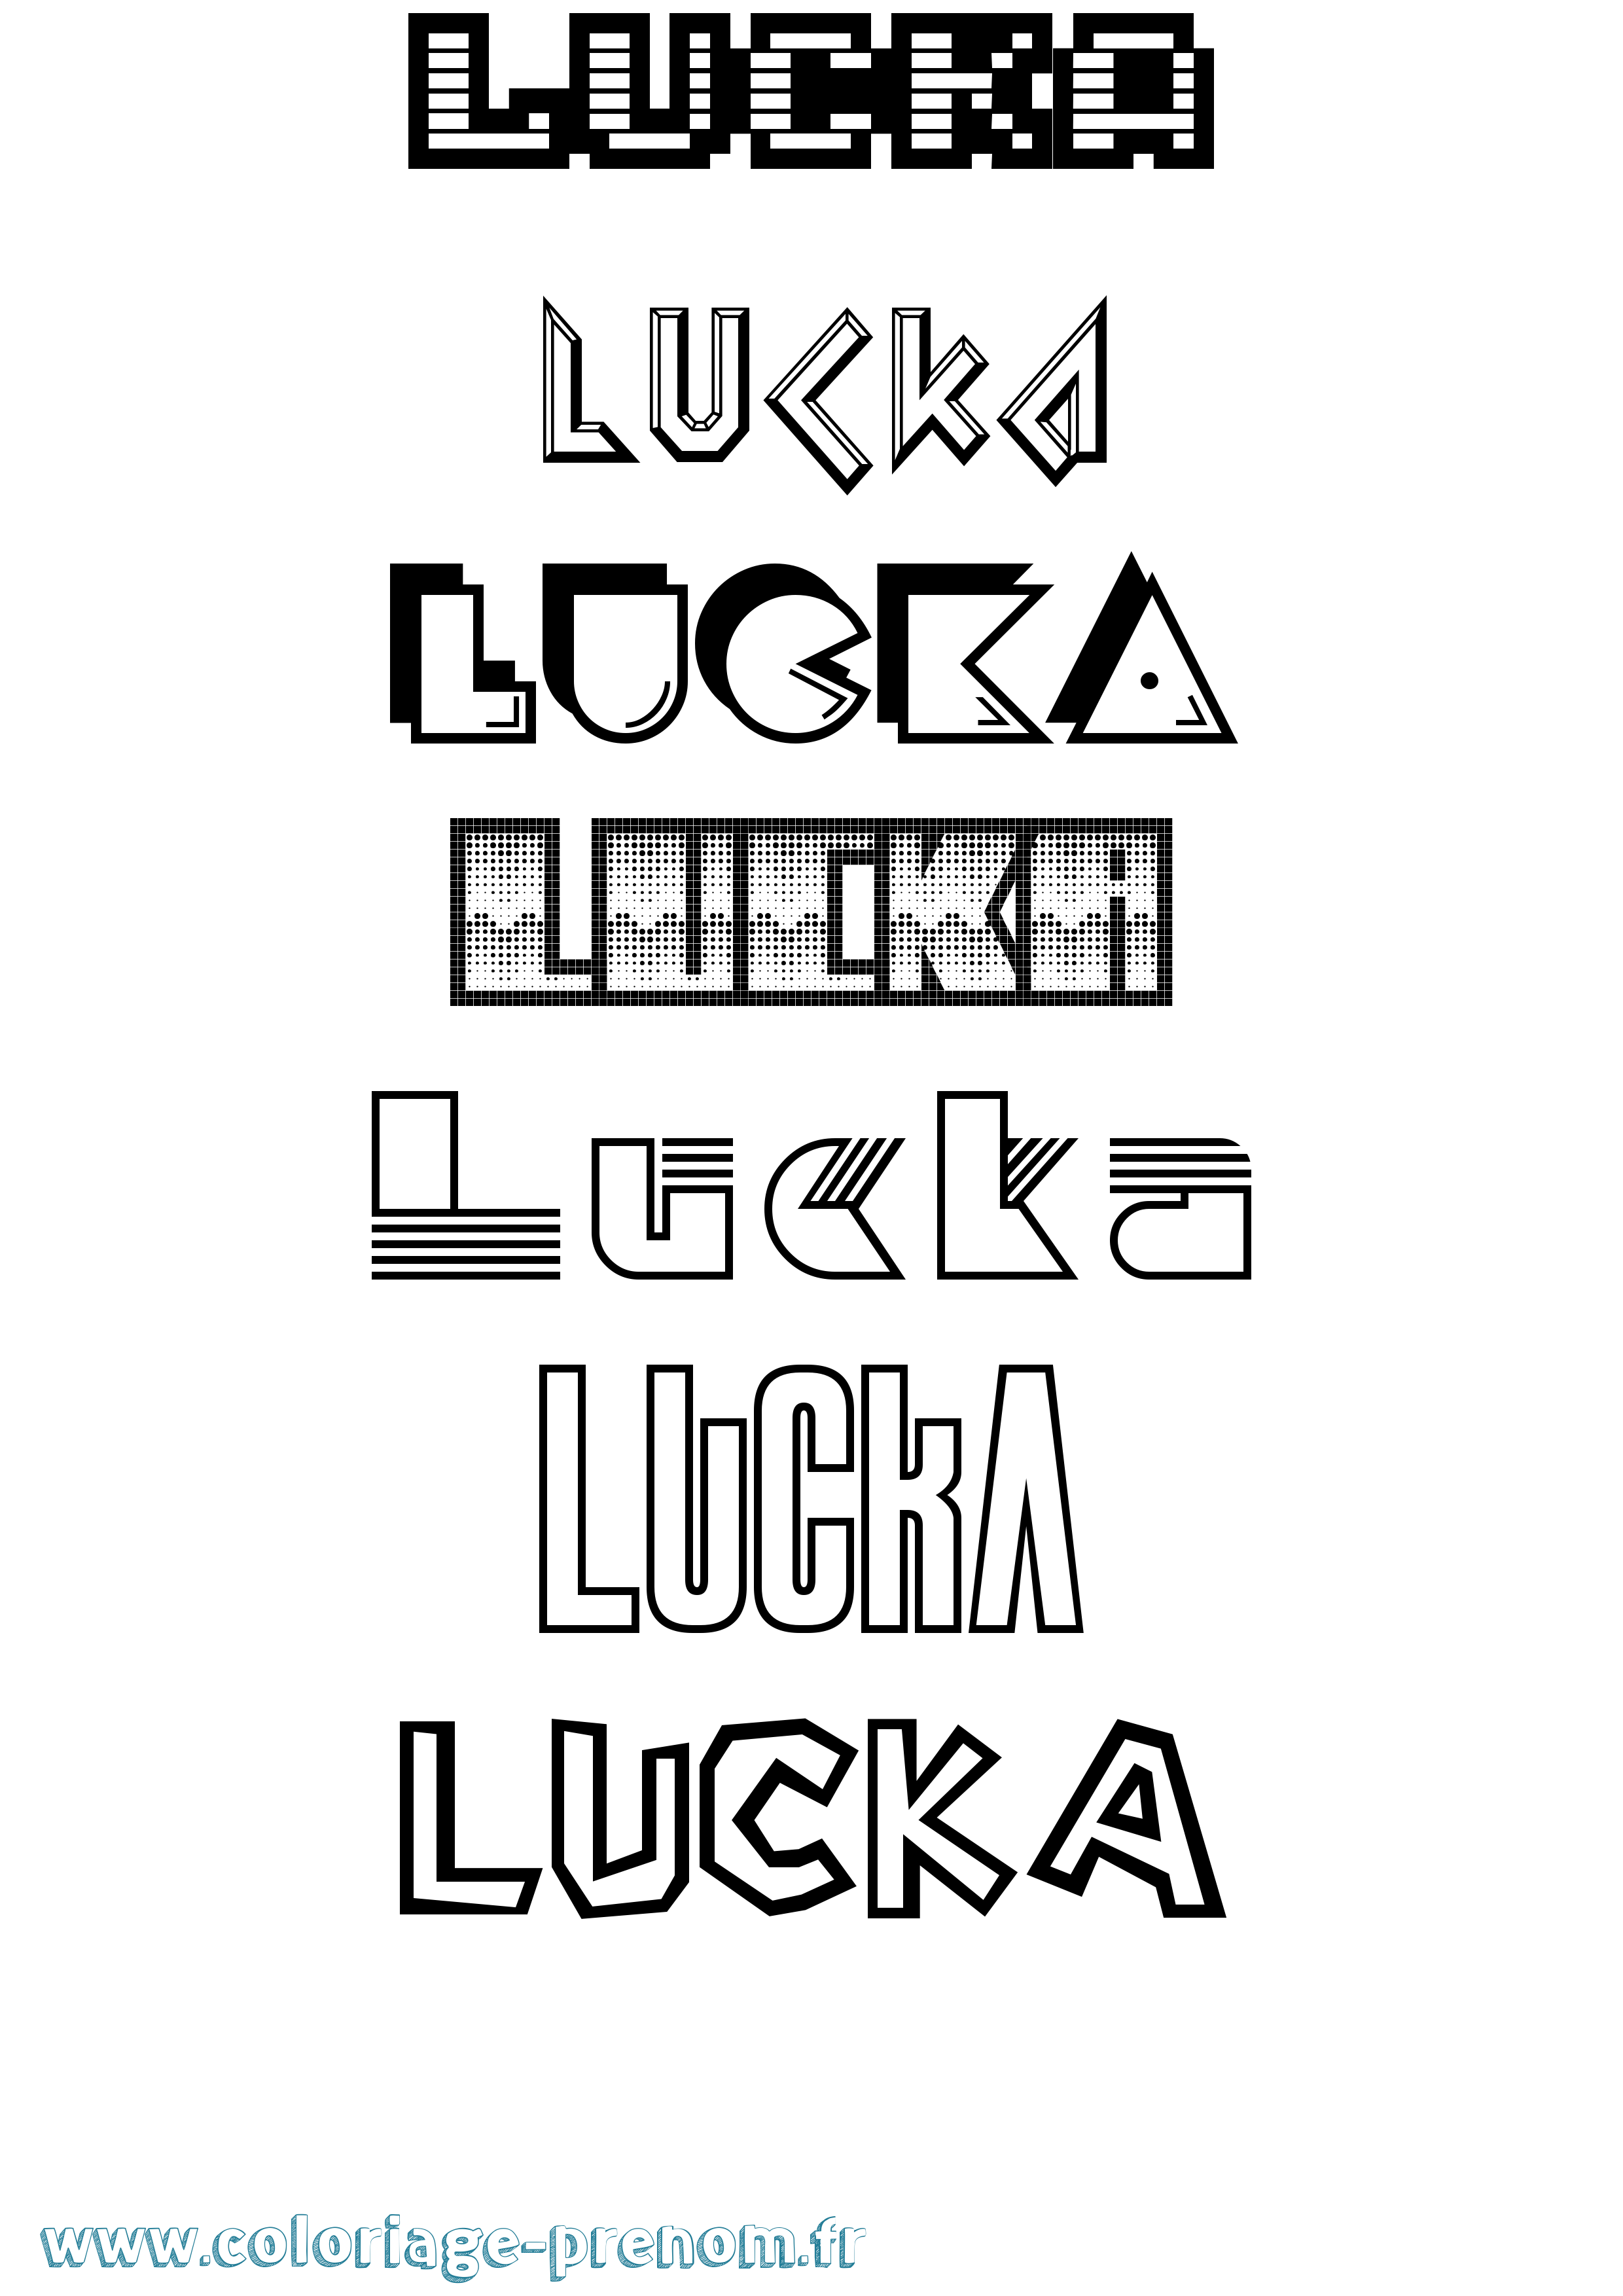 Coloriage prénom Lucka Jeux Vidéos